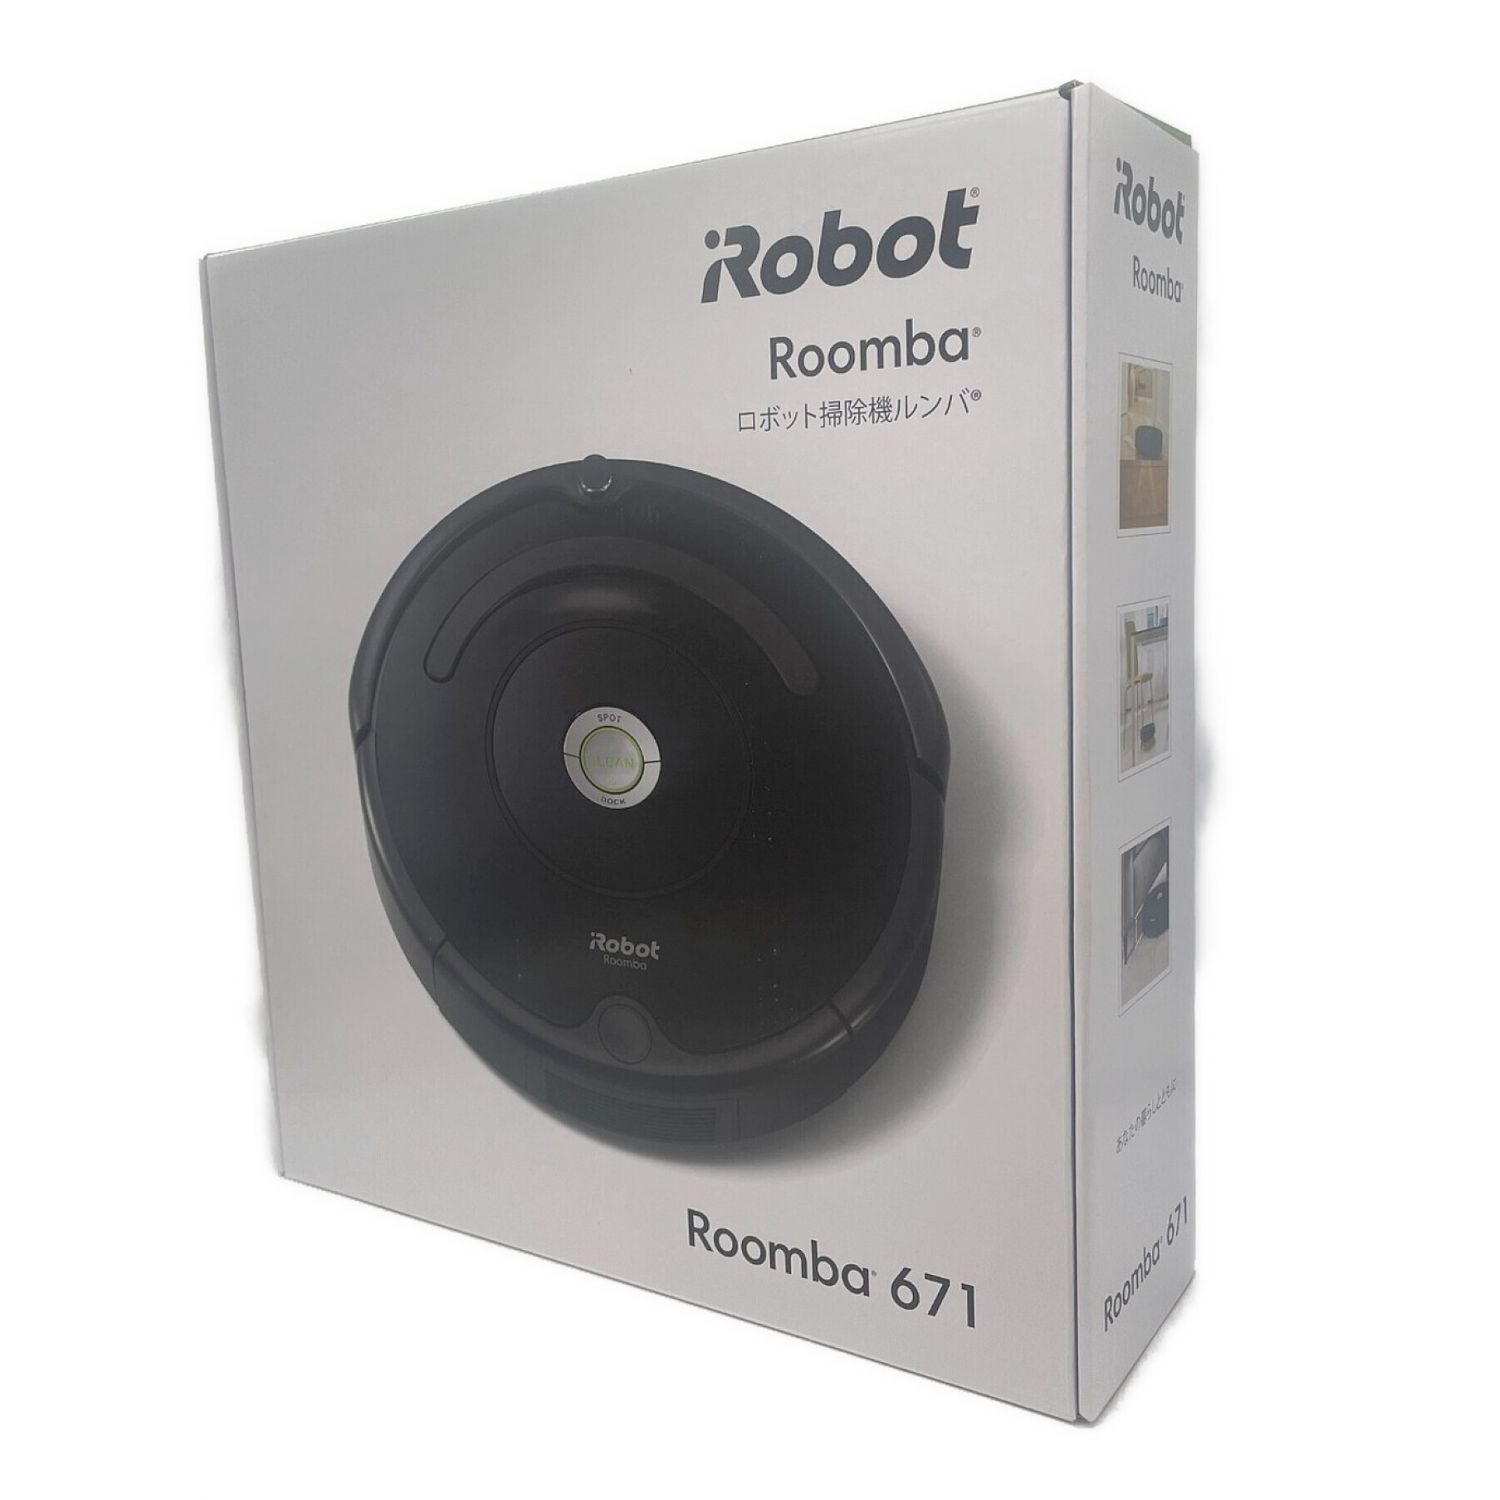 iRobot (アイロボット) ロボットクリーナー Roomba 671 未使用品